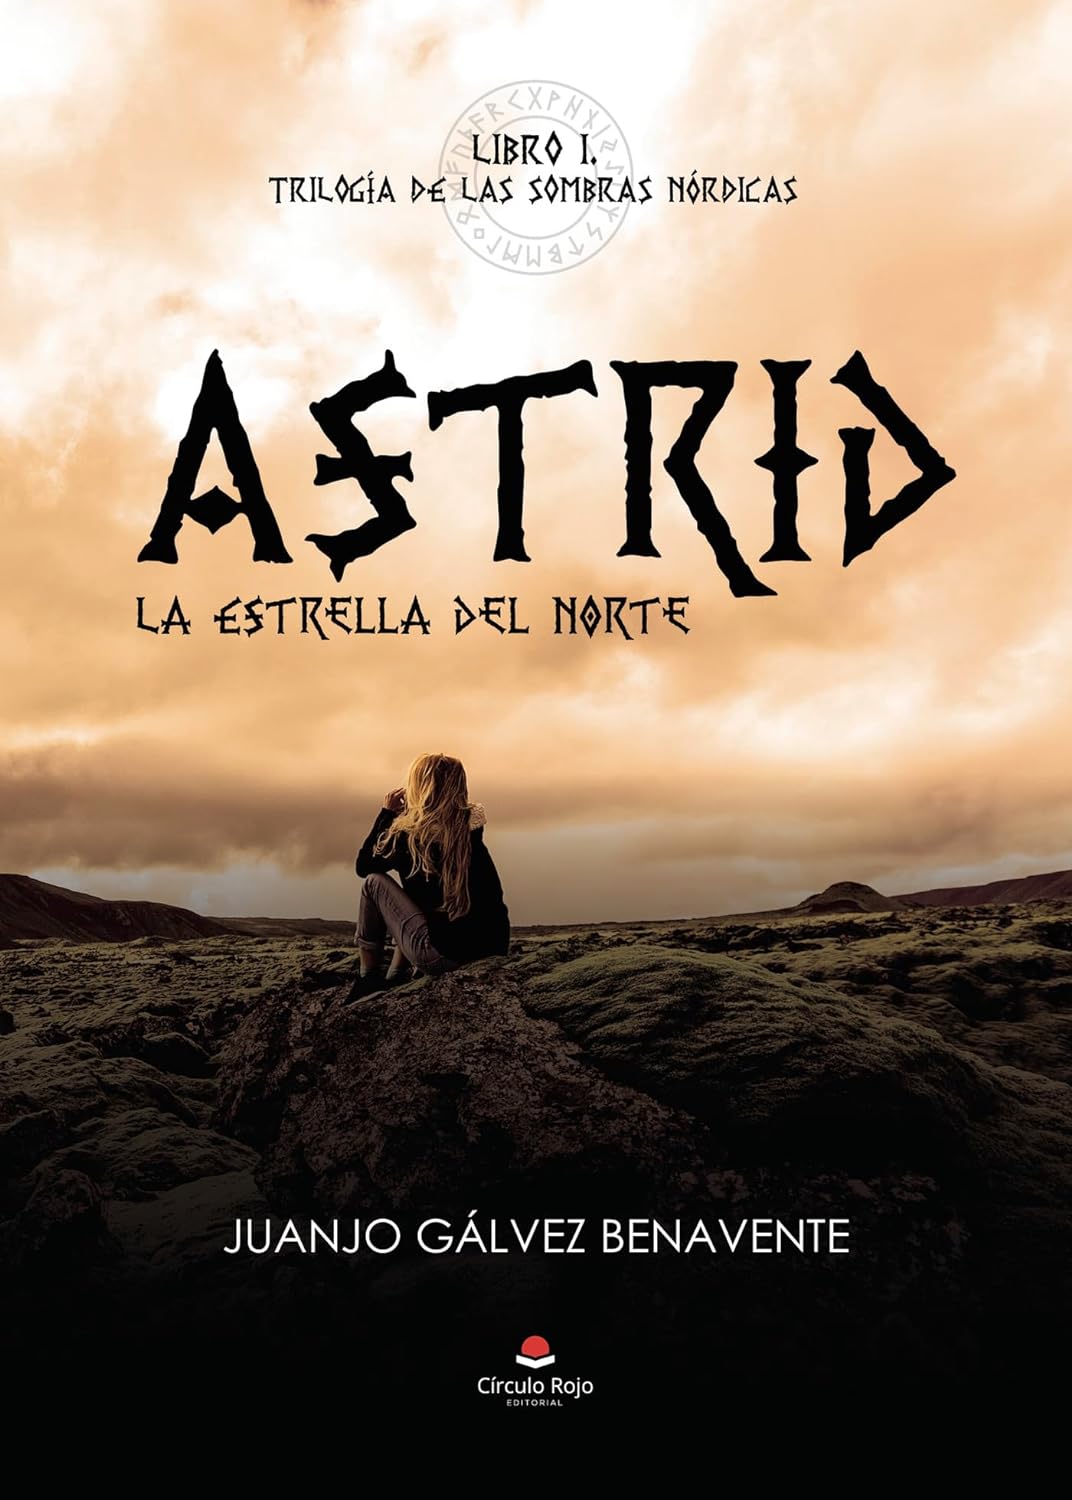 Entrevistamos a Juanjo Gálvez Benavente, autor de “Astrid. La Estrella del Norte”, obra publicada por la editorial Círculo Rojo.